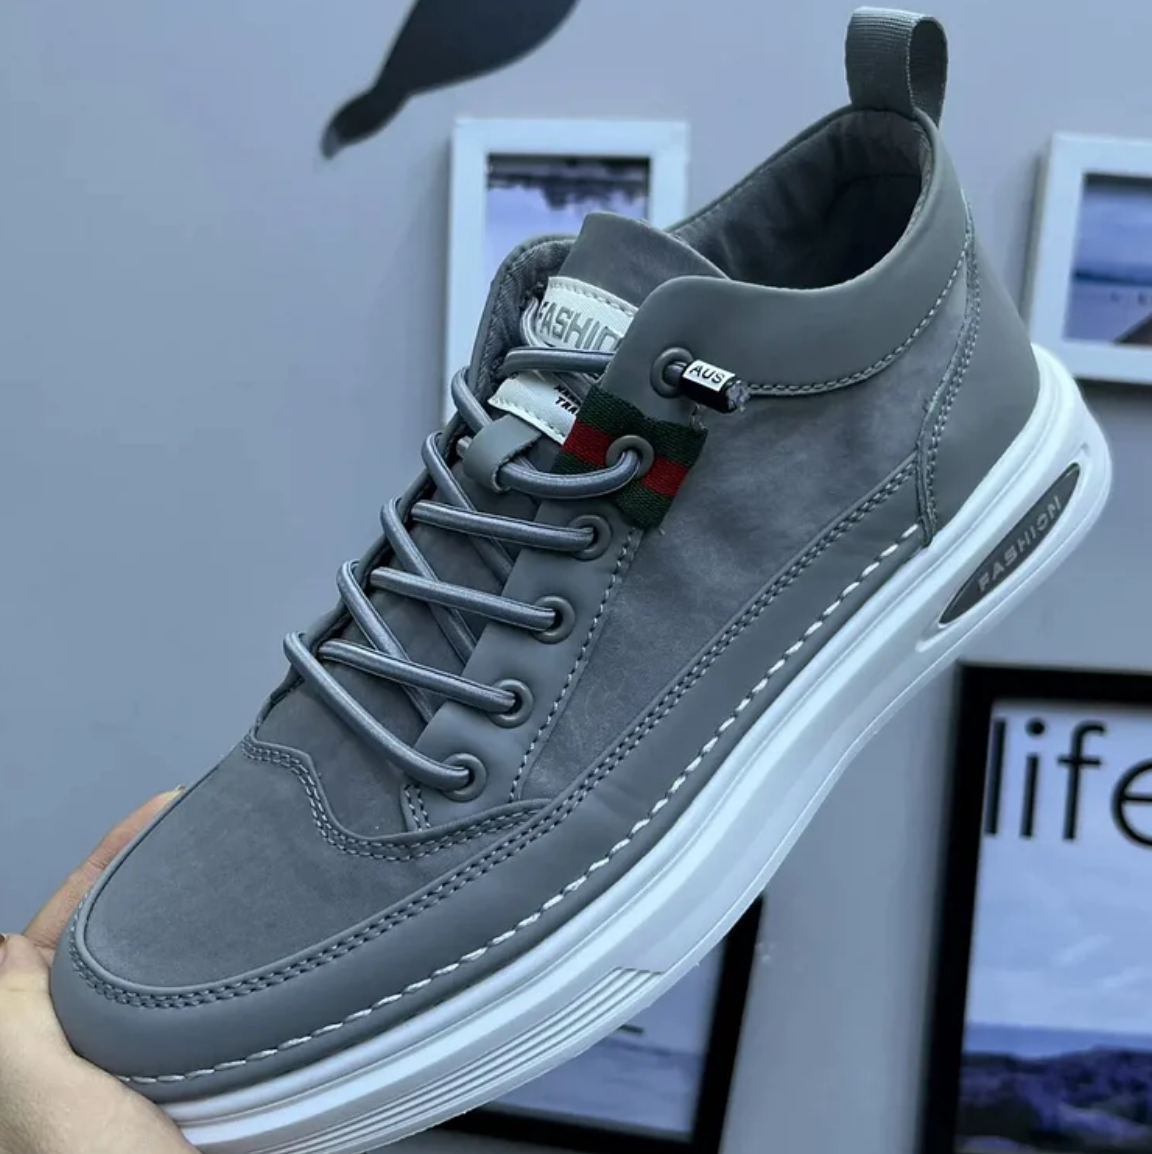 Patrick | Premium fit sneakers